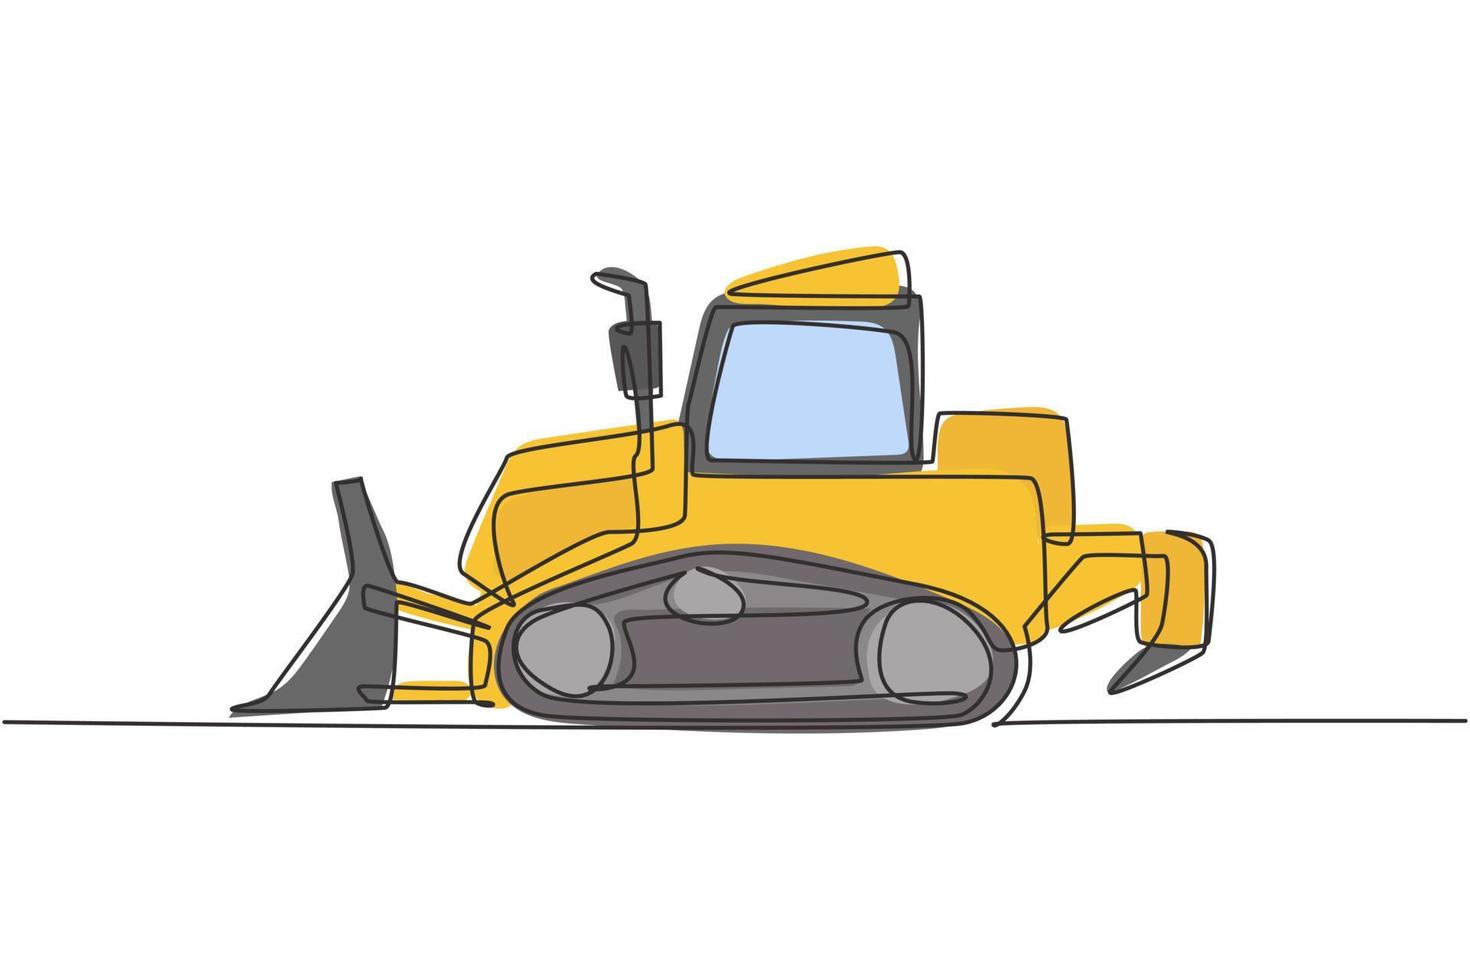 enda kontinuerlig ritning av bulldozer för asfaltering av väg, nyttofordon. tunga traktorgrävare konstruktion maskiner utrustning koncept. trendig enradig design vektor grafisk illustration